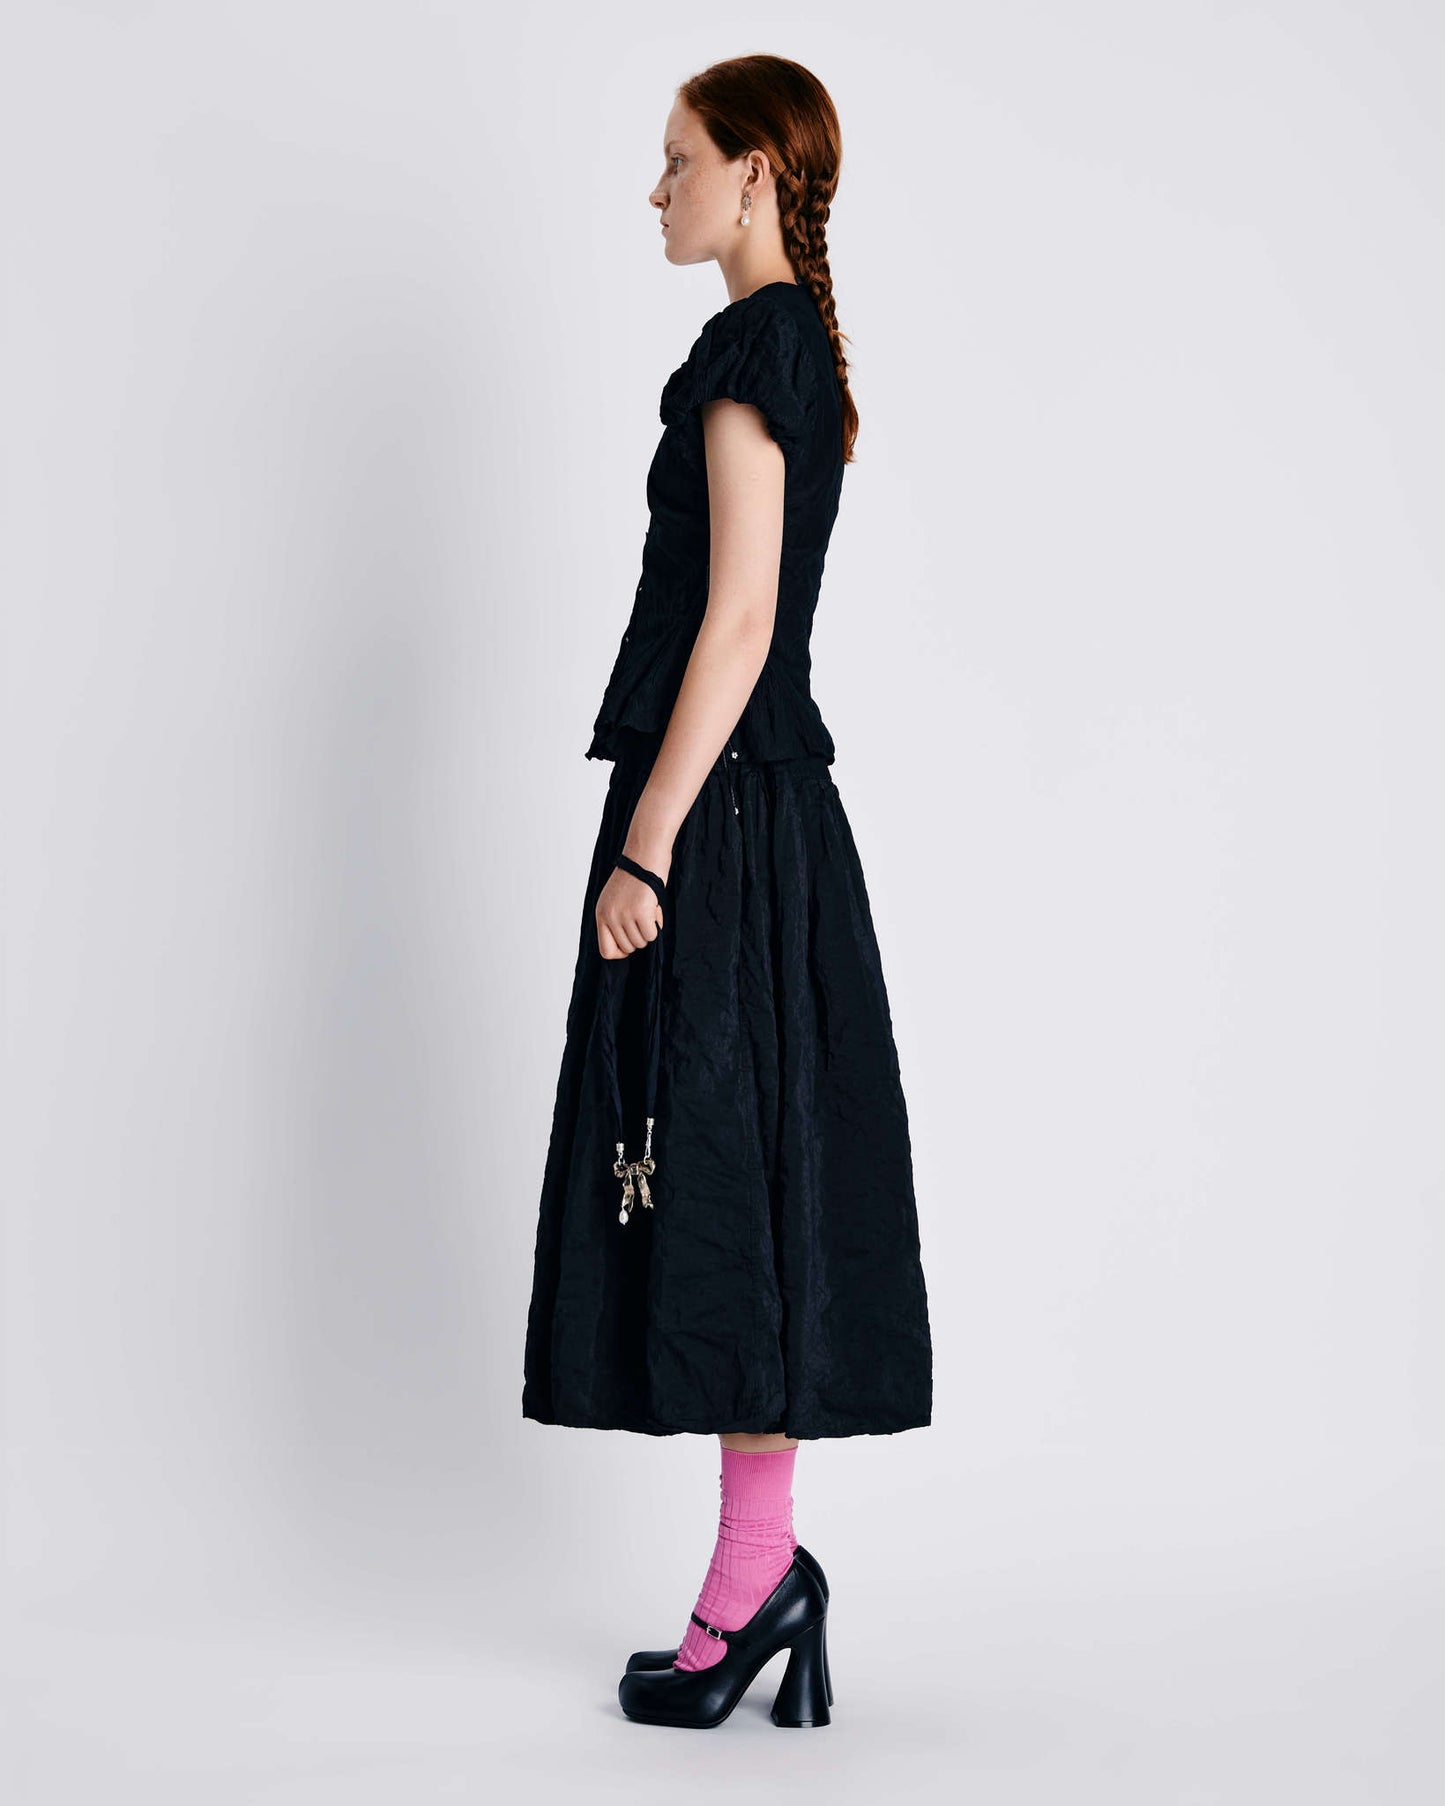 Hilma skirt in black